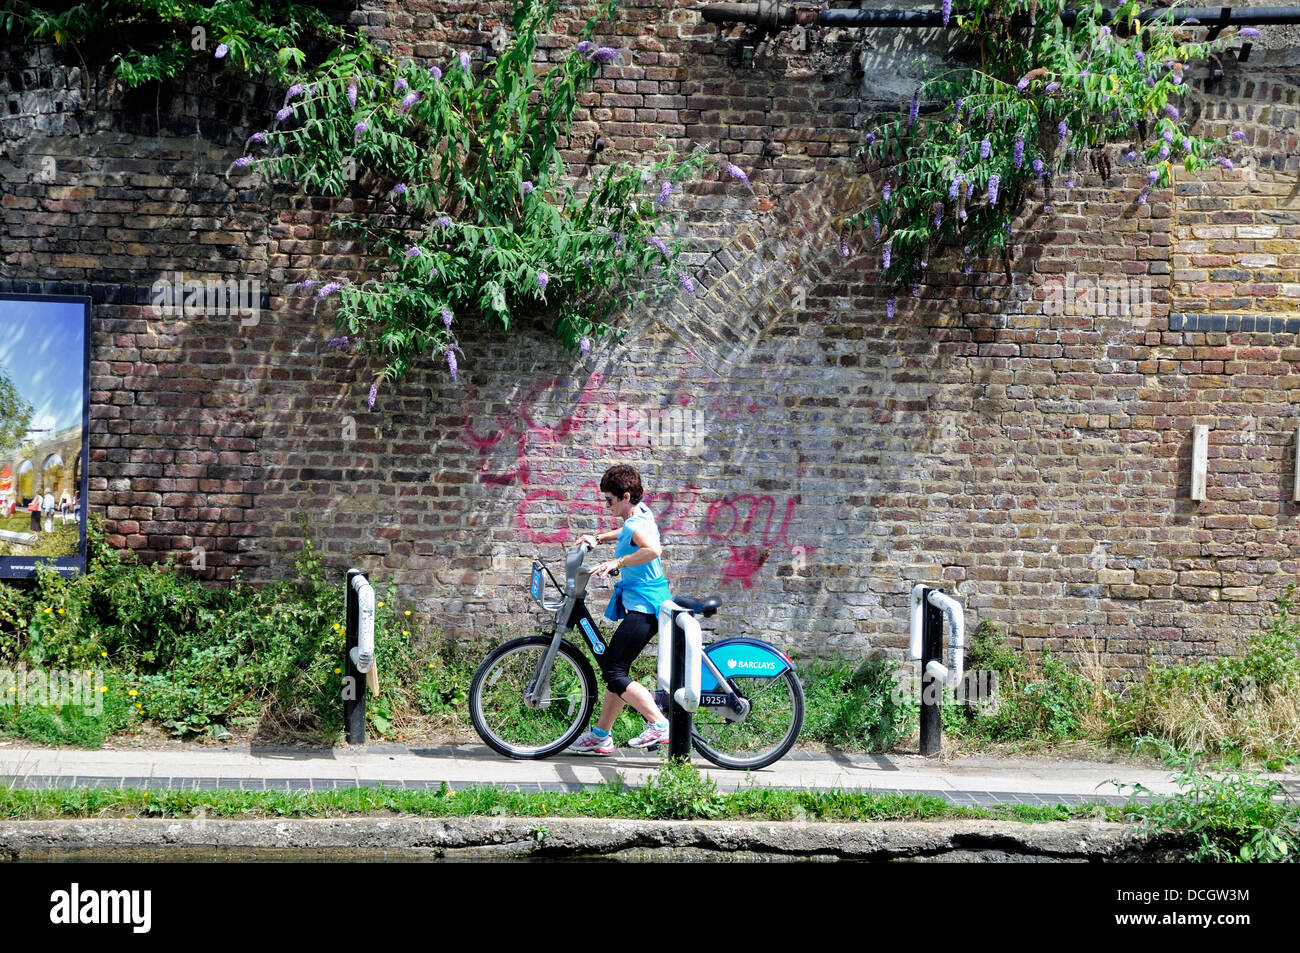 Cycliste féminine sur Barclays Cycle ou Boris Bike chicane négociation installé sur le Regent's Canal de halage pour ralentir les cyclistes Banque D'Images